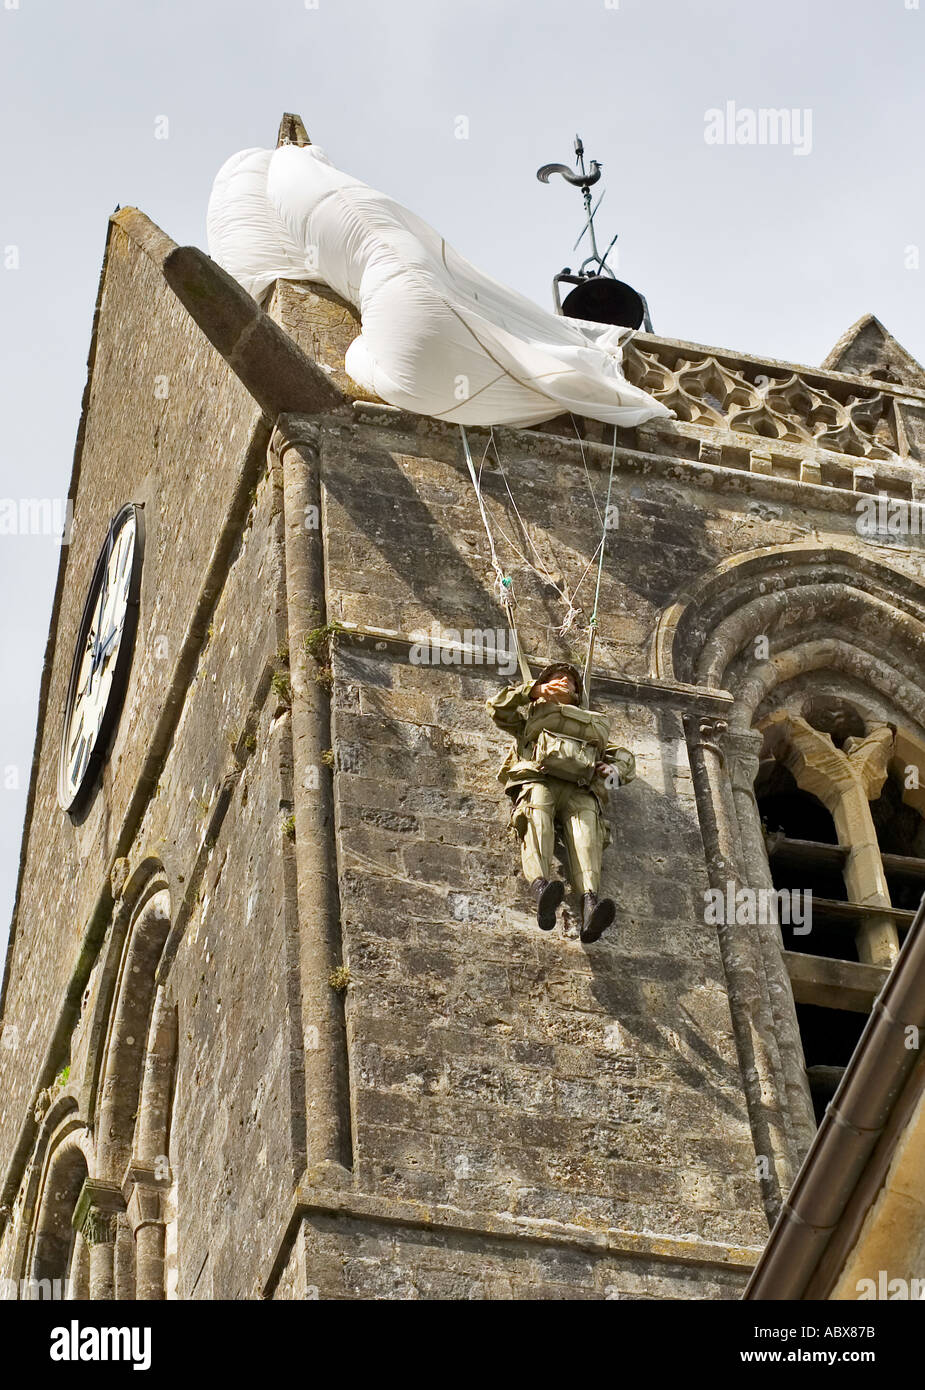 Modello di John Steele paracadutista USA ottantaduesima Airborne sulla torre della chiesa di St Mere Eglise, Normandia, Francia Foto Stock